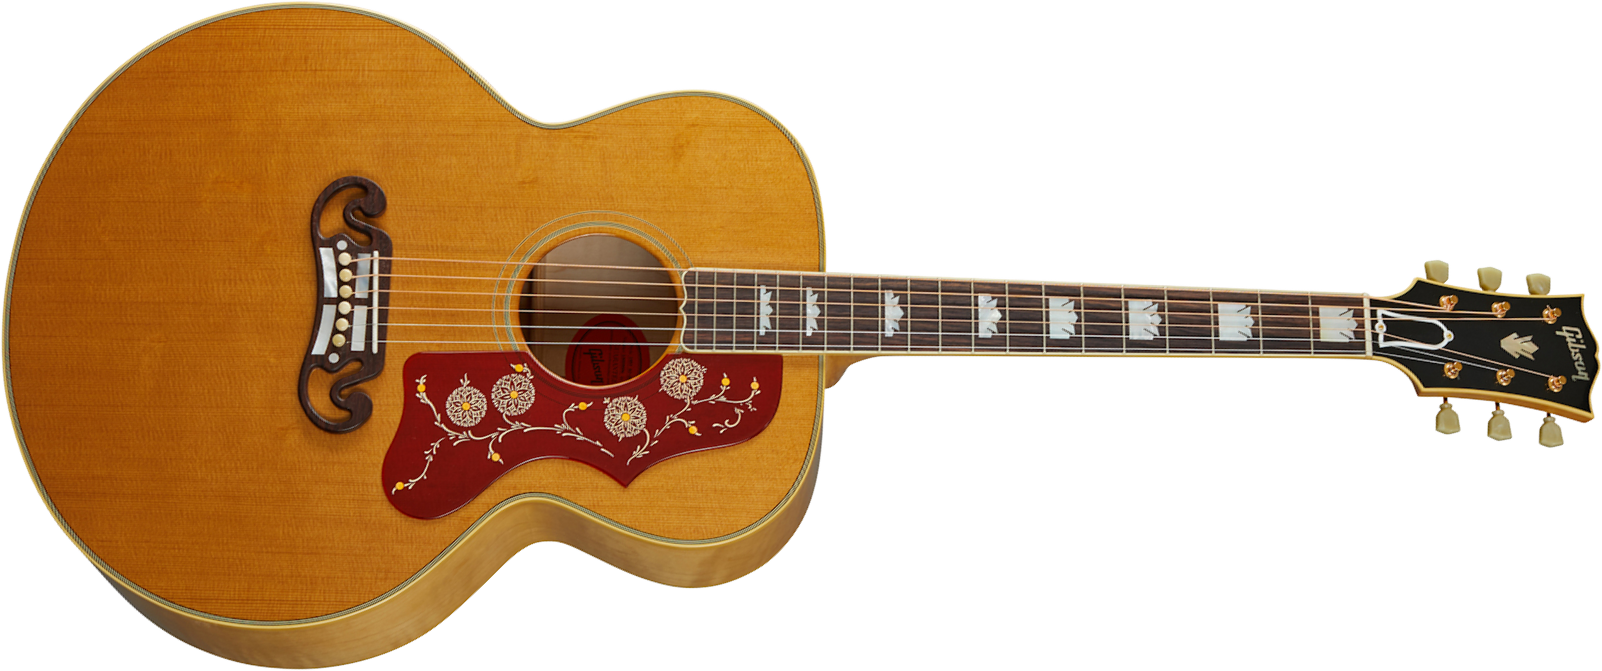 Gibson Custom Shop Sj-200 1957 Super Jumbo Epicea Erable Rw - Vos Antique Natural - Guitare Acoustique - Main picture